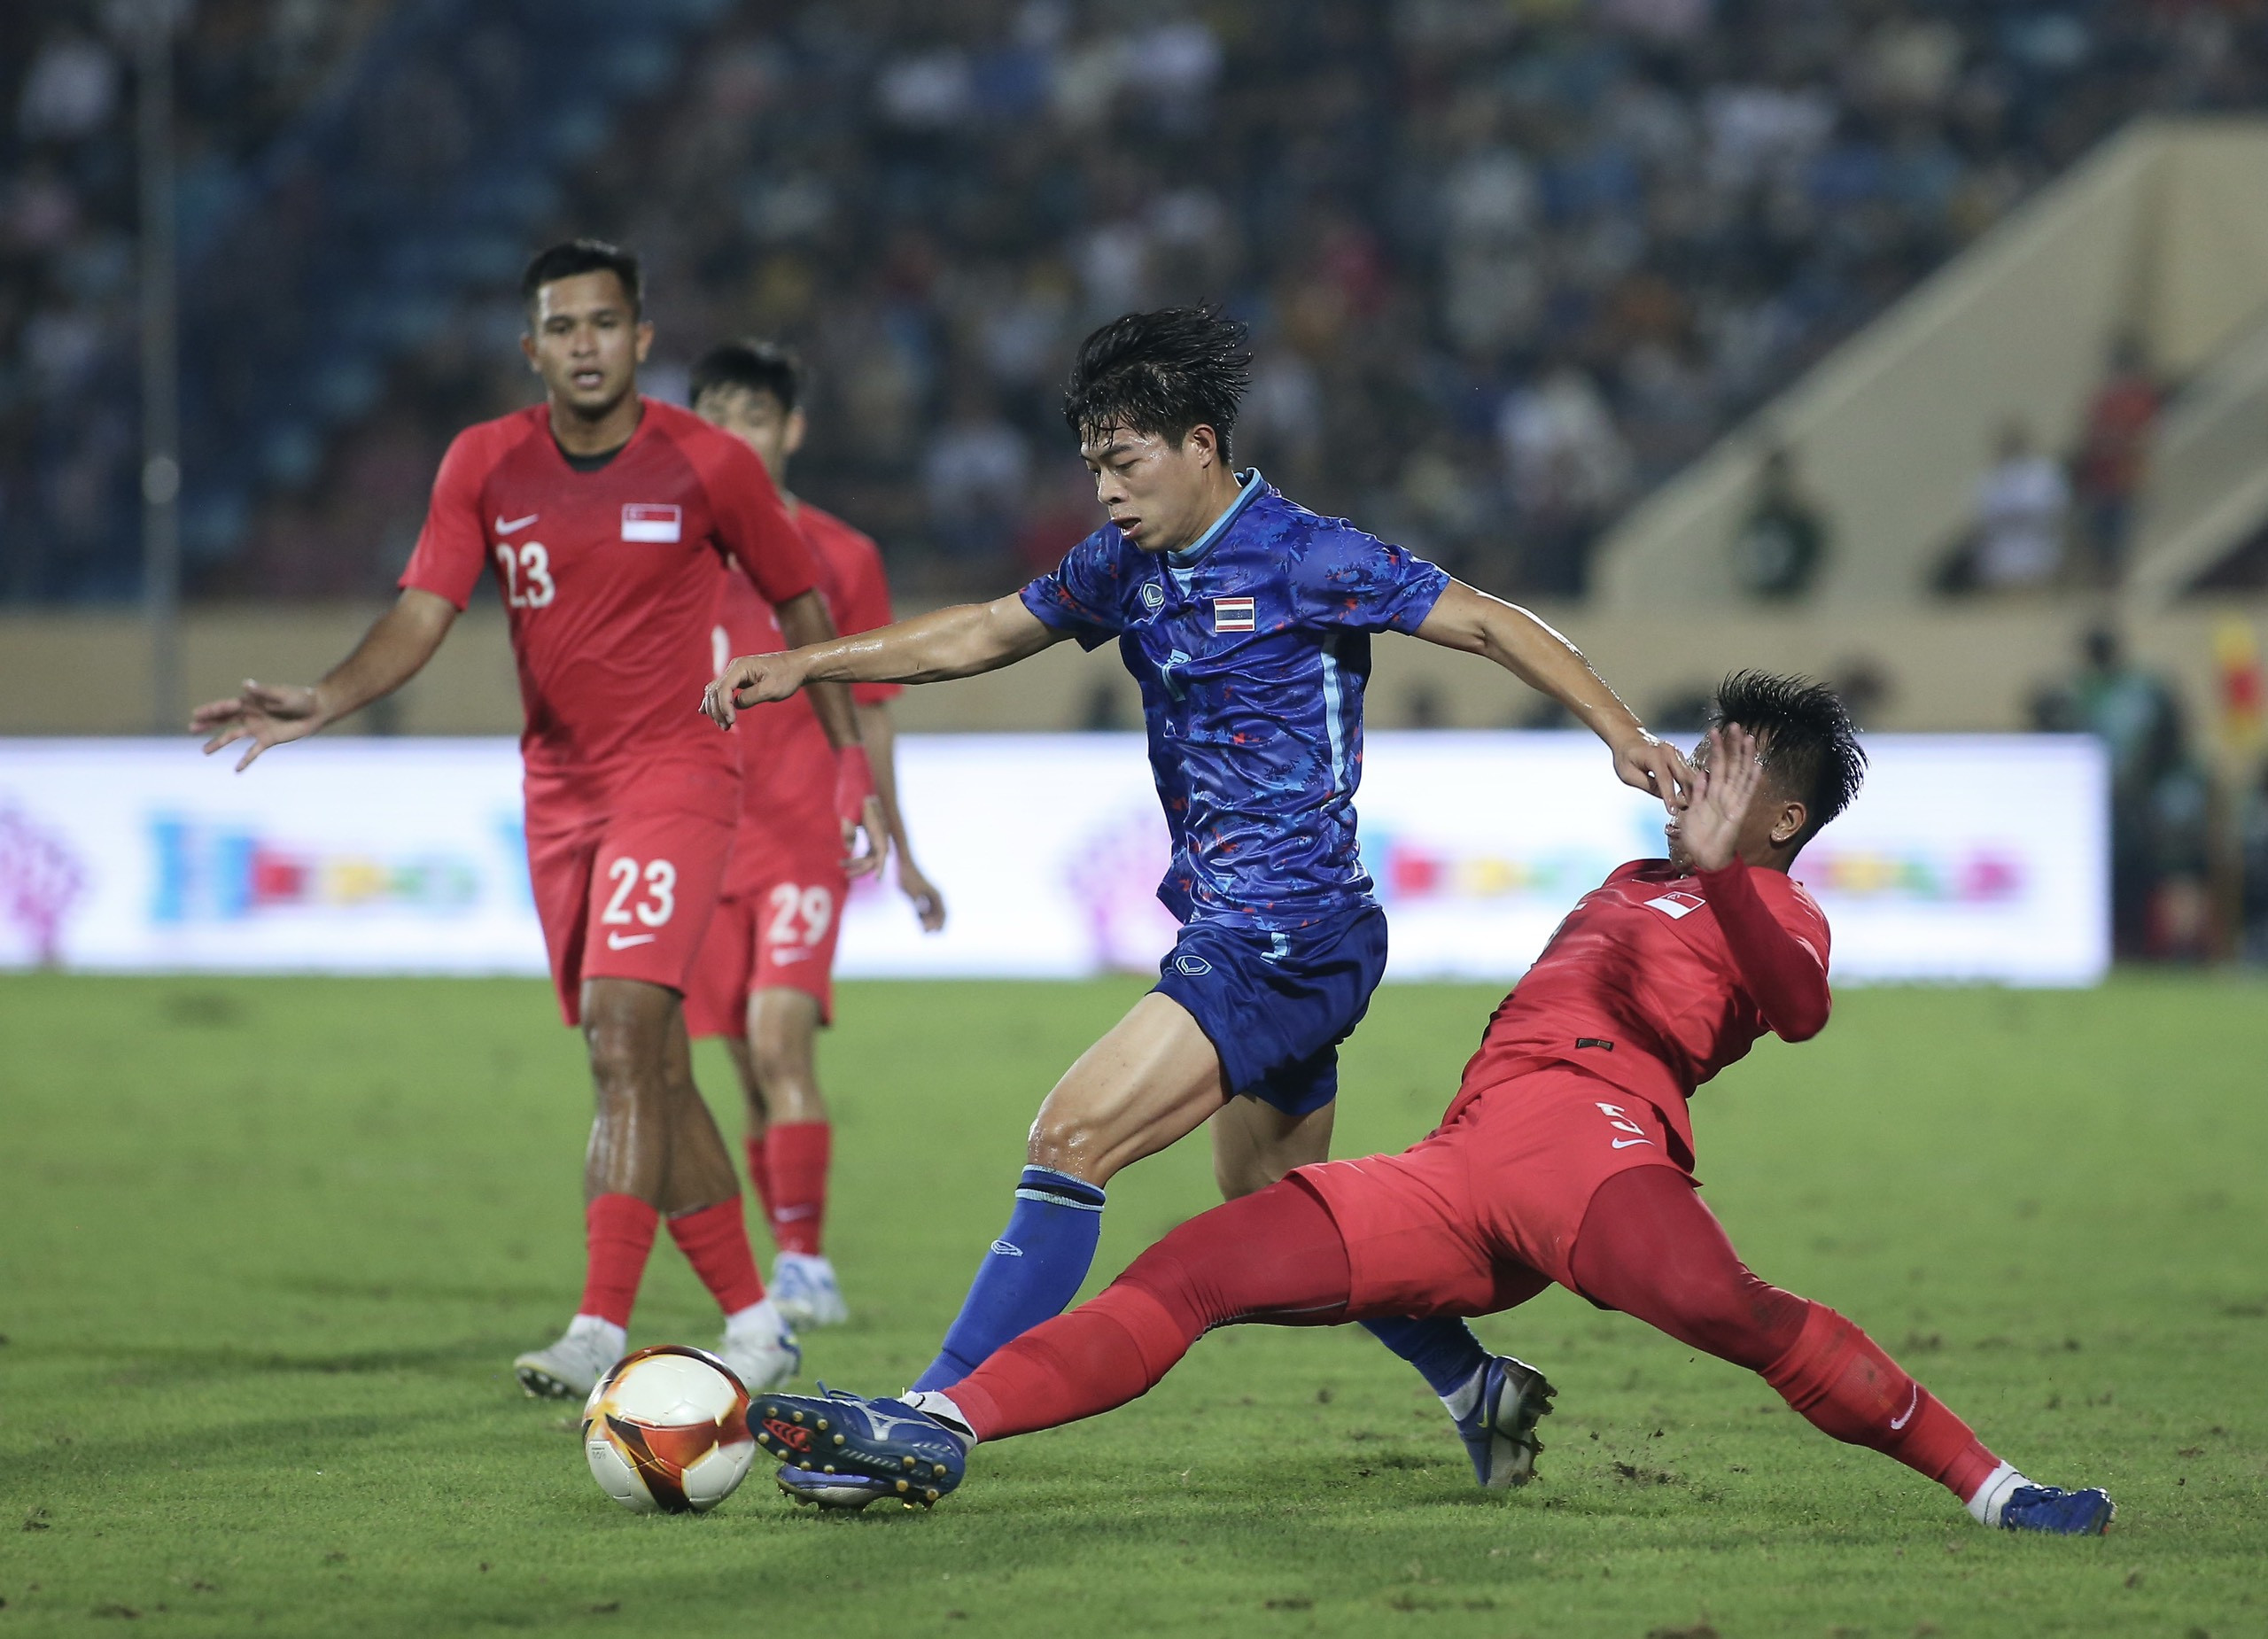 U23 Thái Lan sau thất bại ở trận ra quân đặt mục tiêu chiến thắng các trận còn lại để tranh vé bán kết, với đối thủ kế tiếp là Singapore.